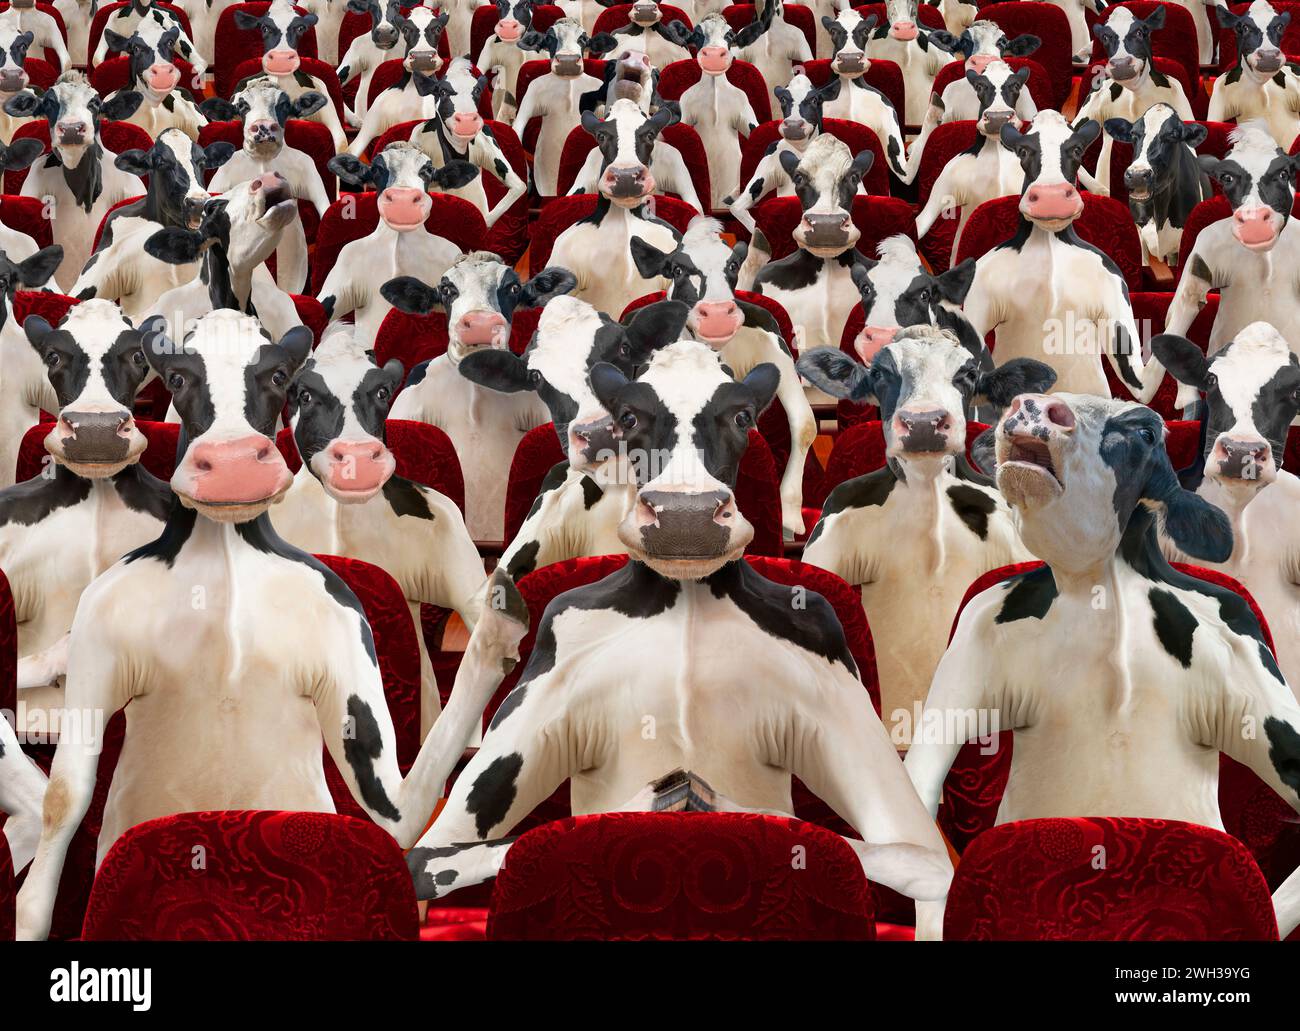 Une salle de cinéma est remplie d'un public de vaches Holstein dans une drôle, bizarre image anthropomorphique de vache. Banque D'Images